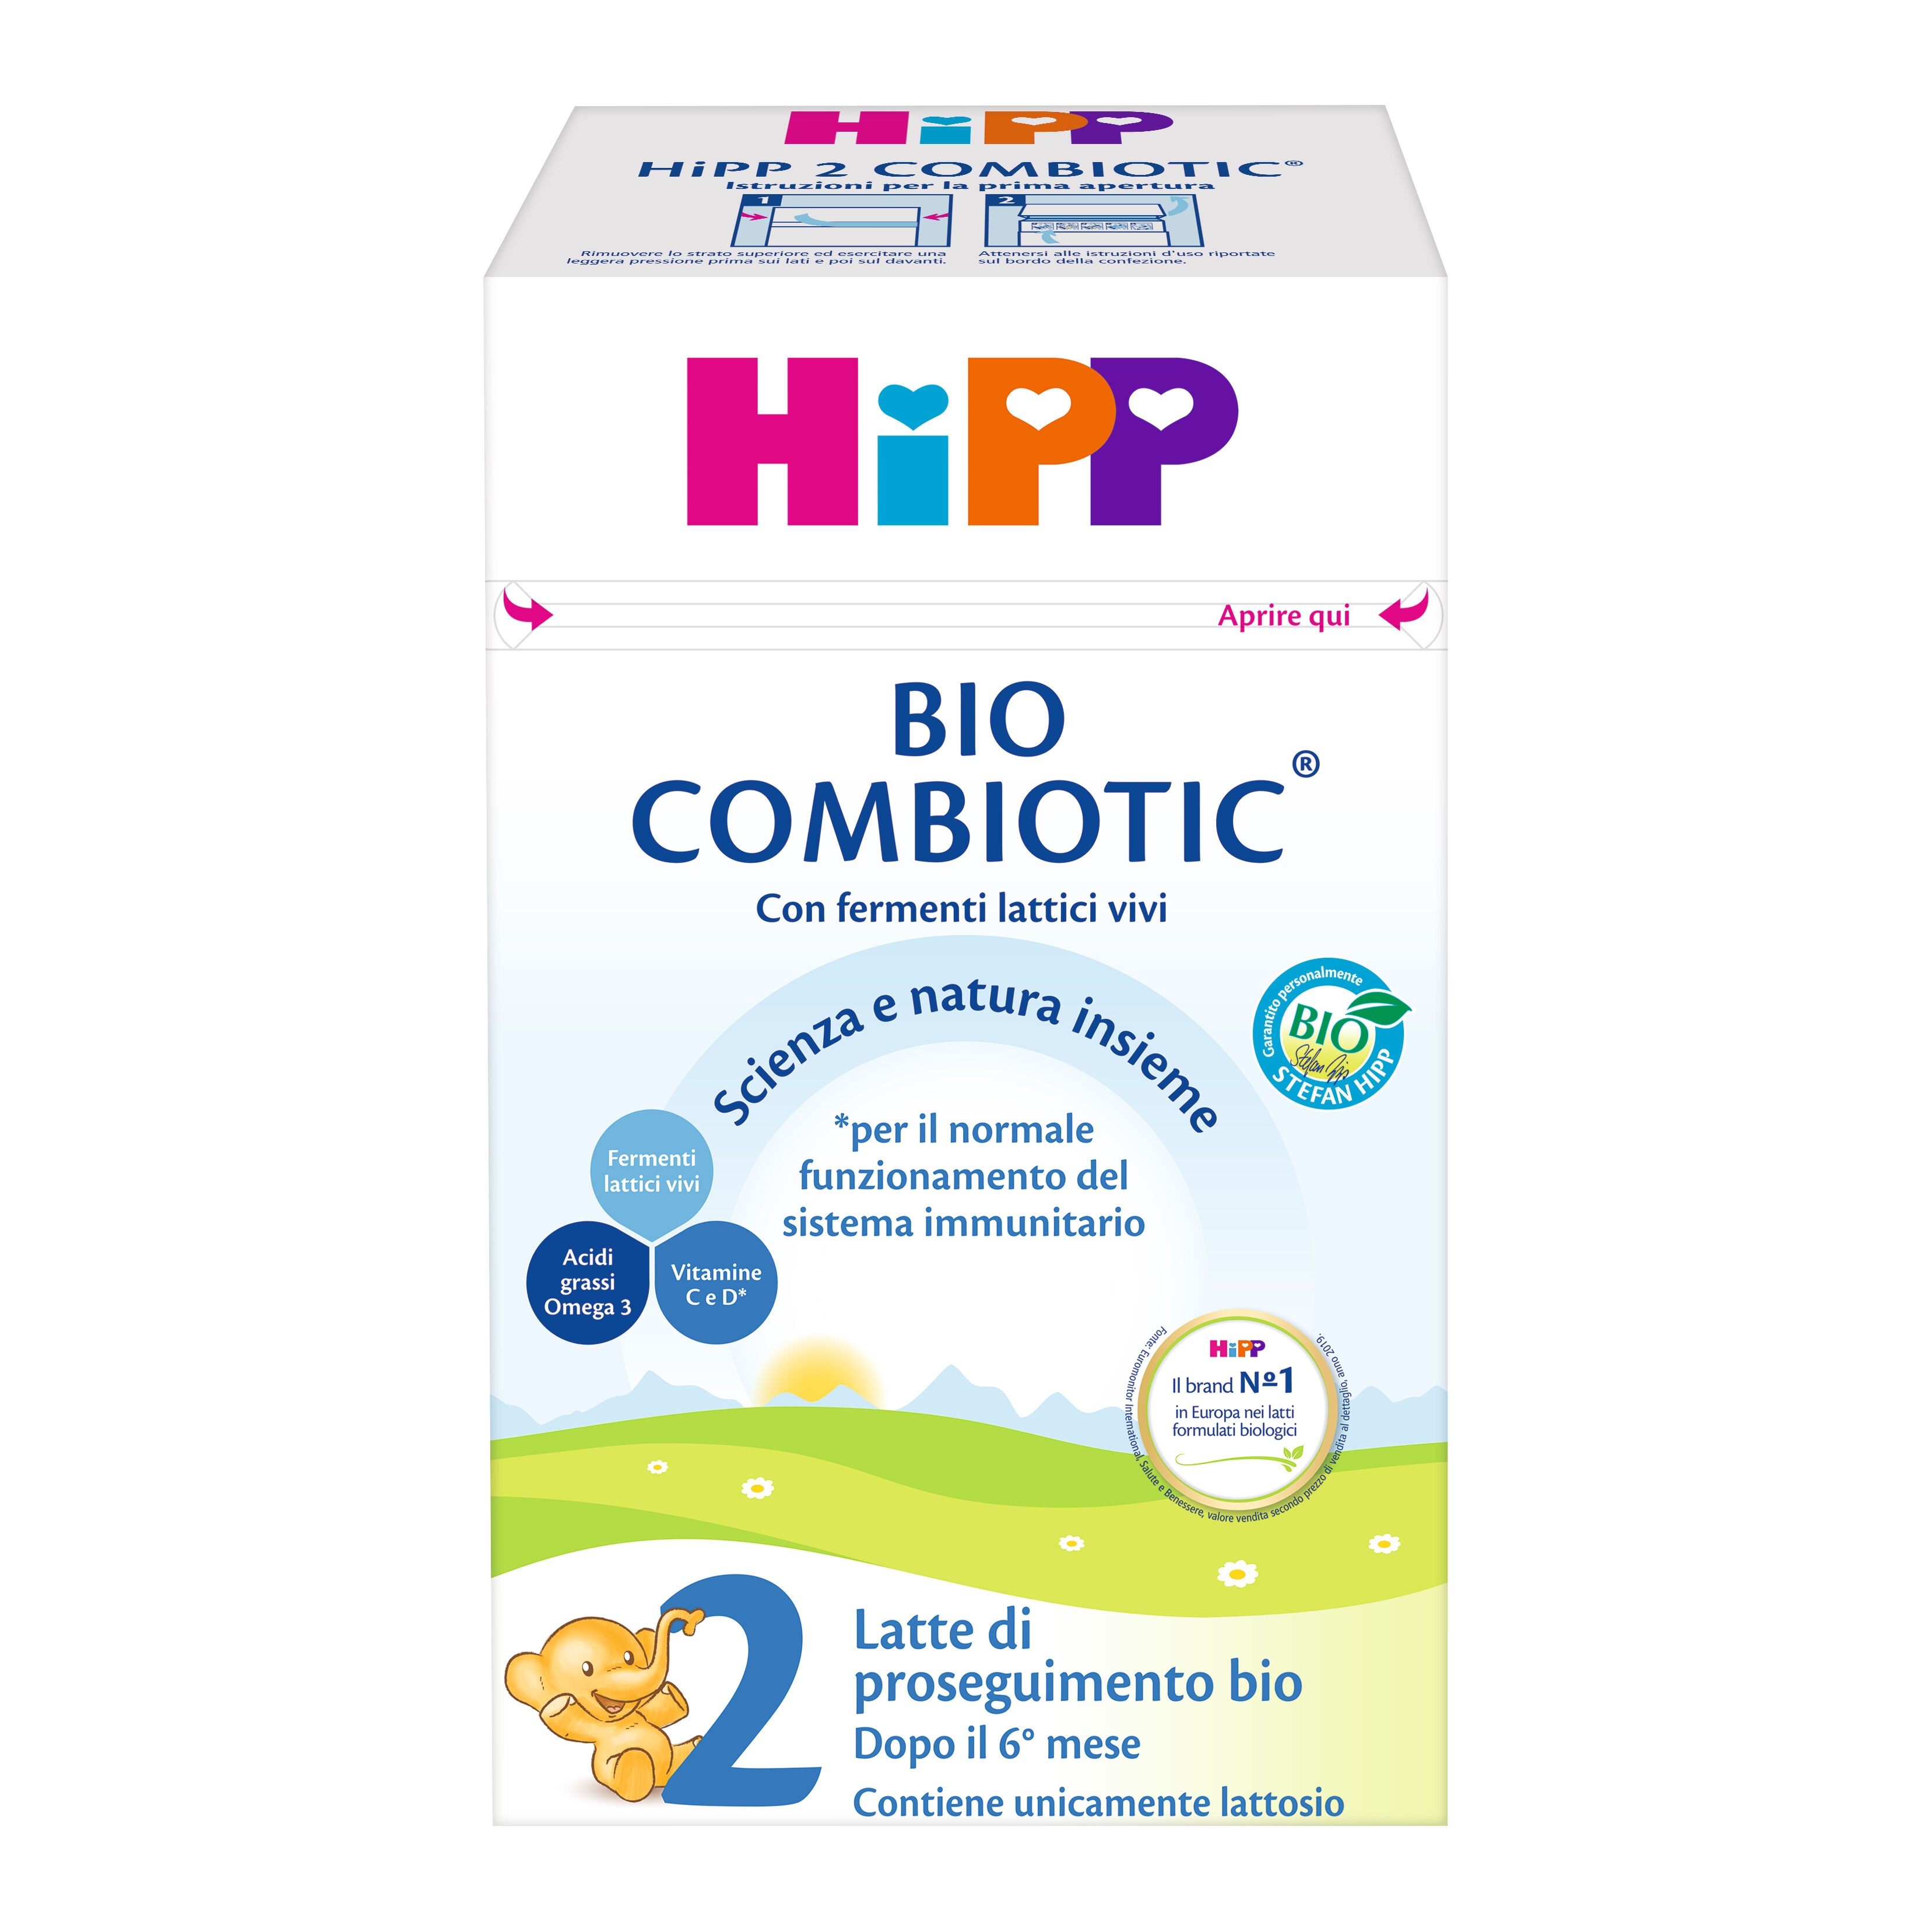 Hipp Italia Srl Hipp 2 Bio Combiotic Liq.470ml